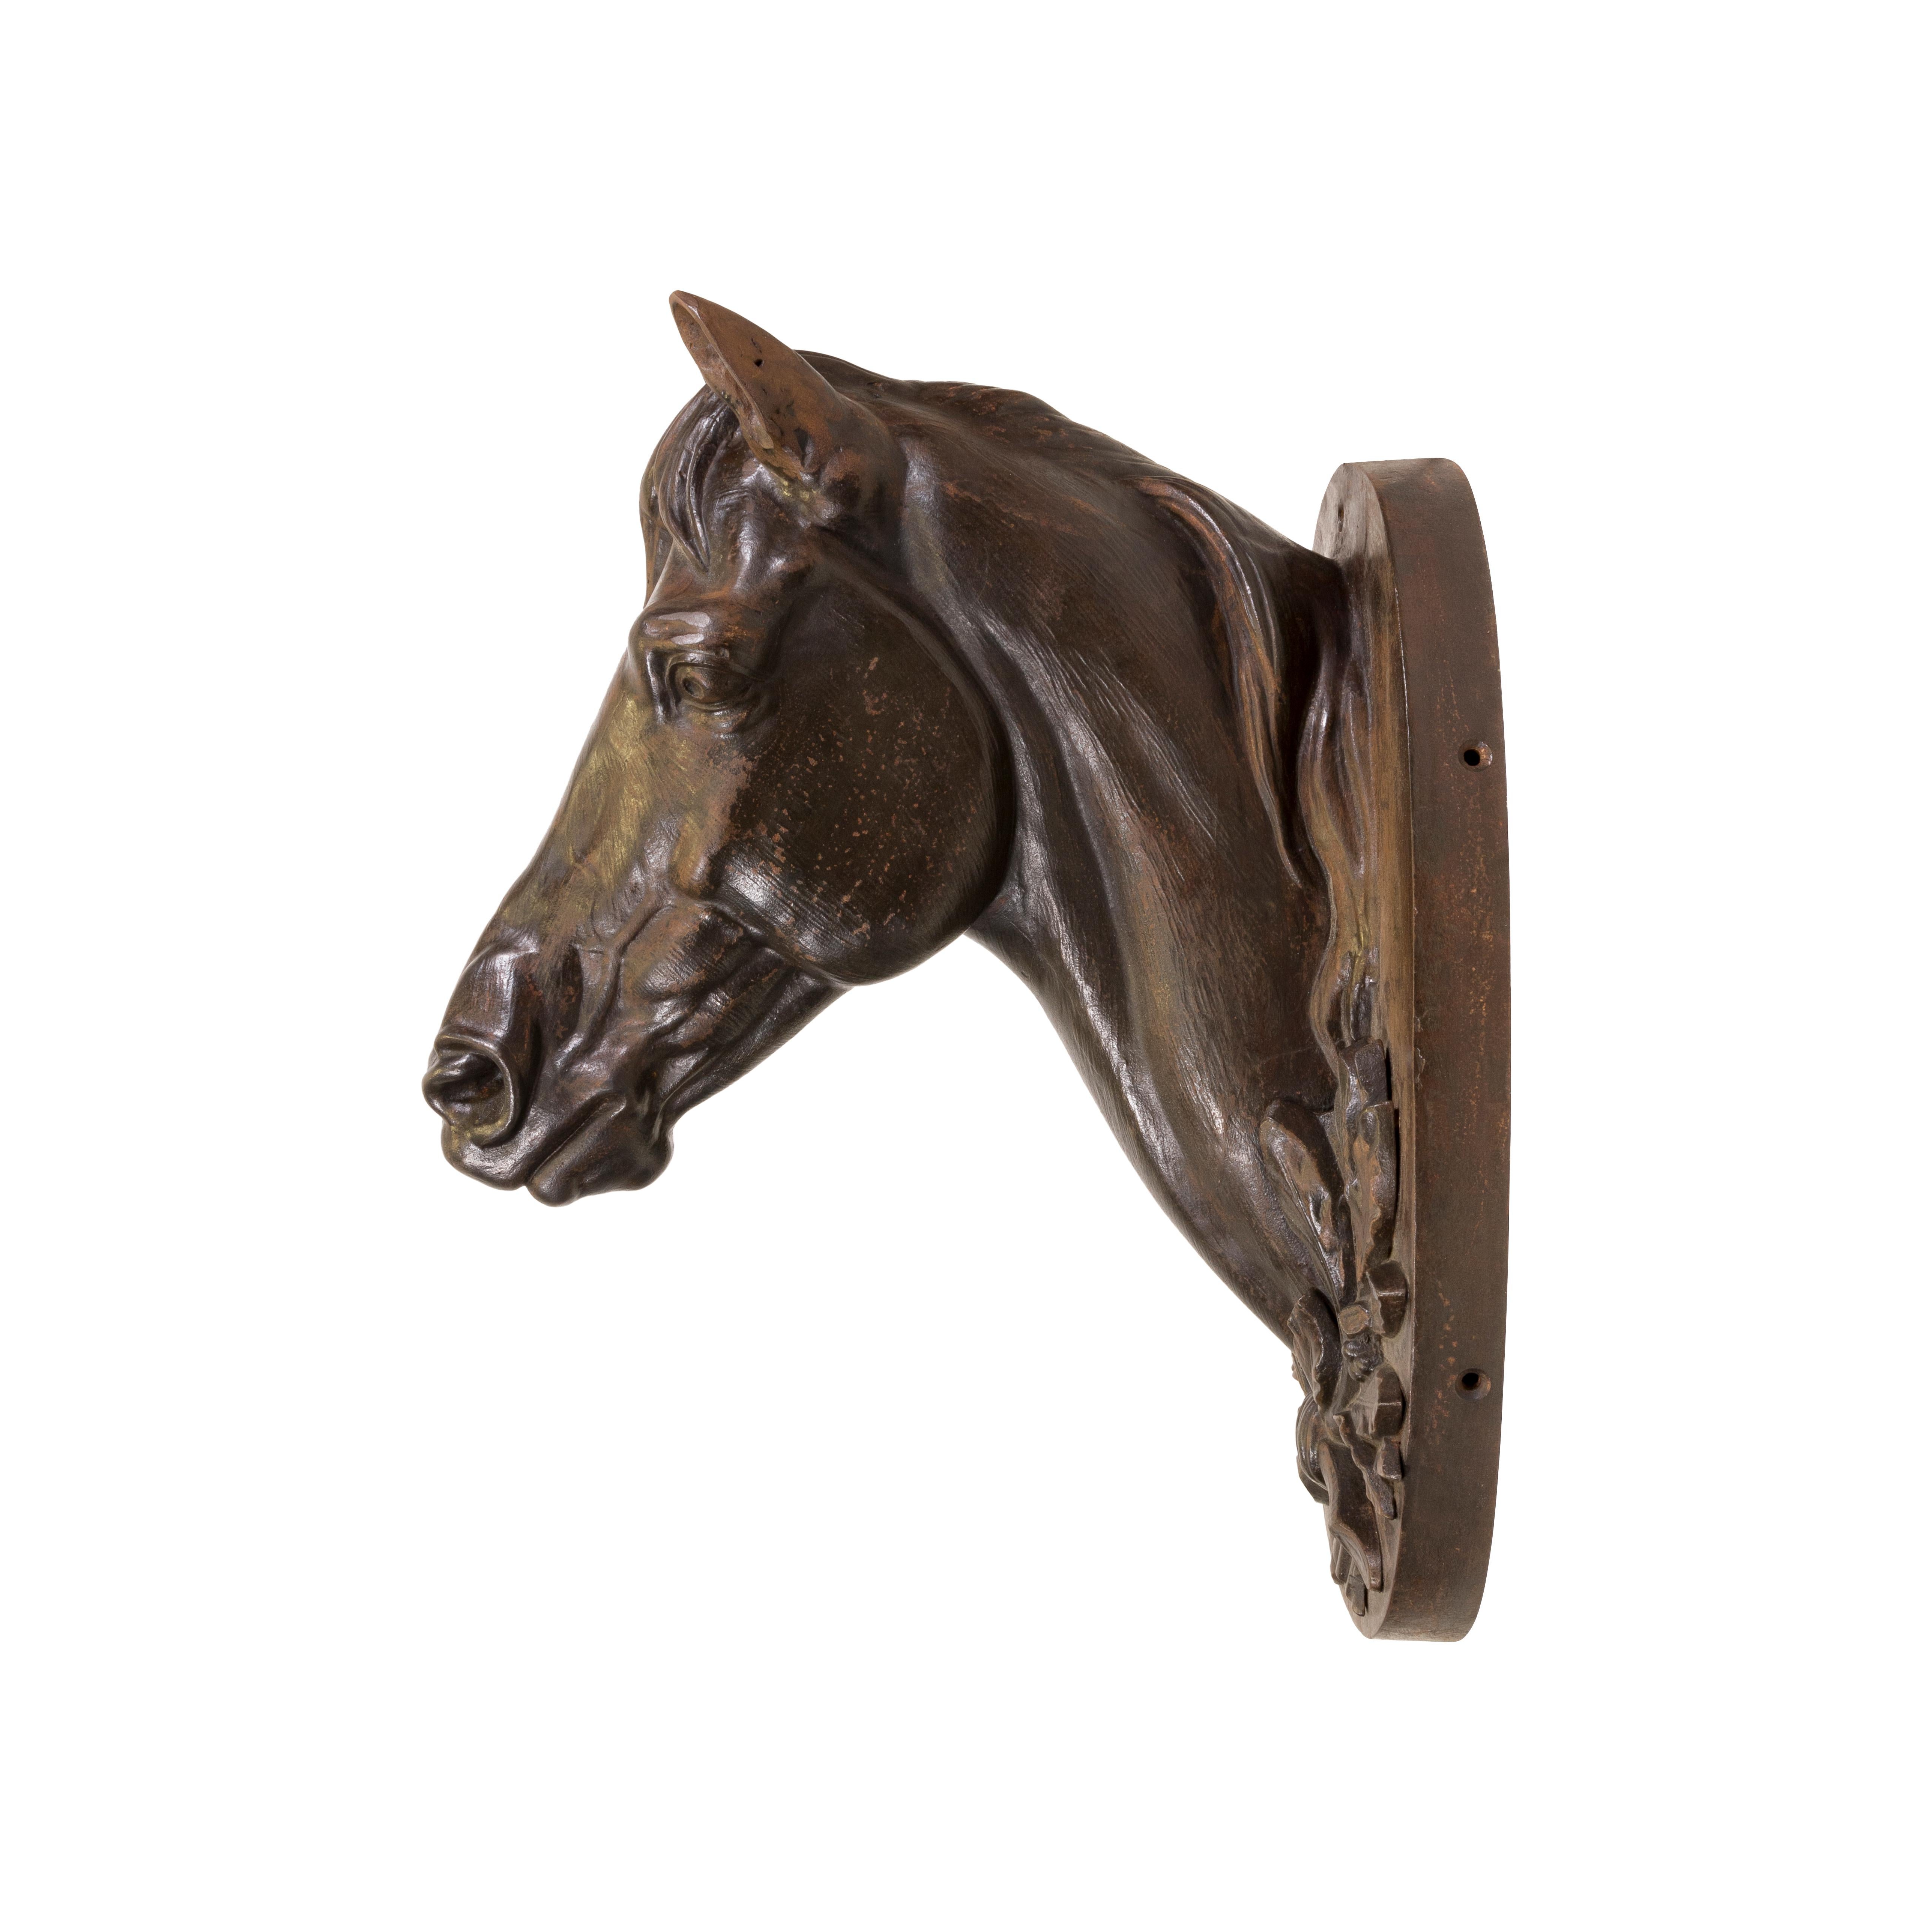 Tête de cheval en fonte française avec couronne et plaque. Belle couleur bronze. 

PÉRIODE : Première moitié du XXe siècle
ORIGINE : France, Europe
Taille : 22 